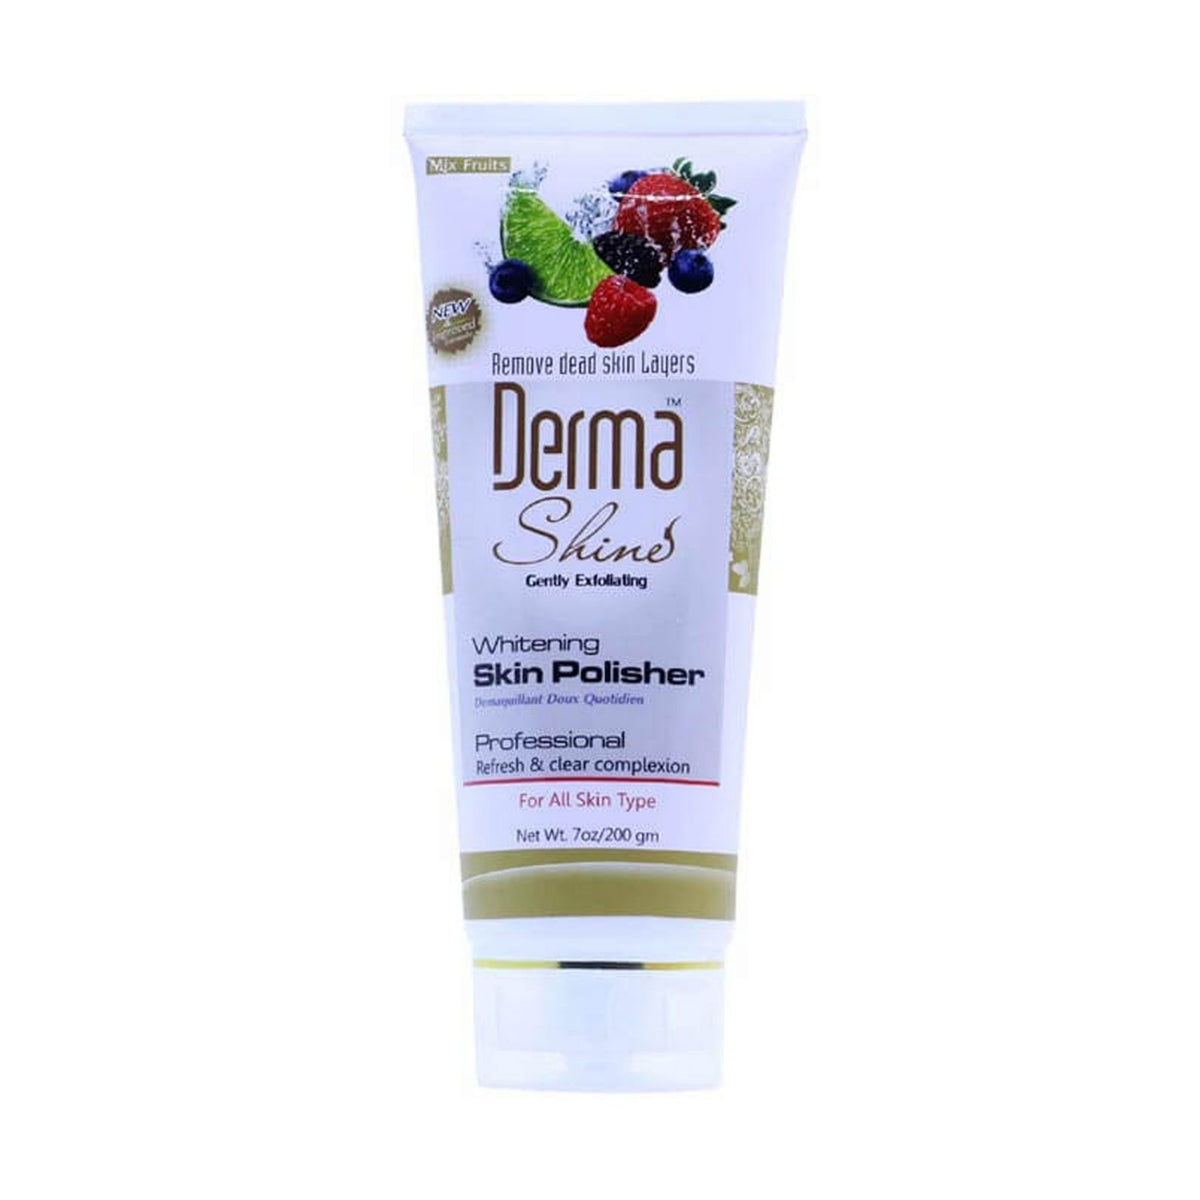 Derma Shine Facial Kit Pack of 6 Whitening Scrub - Massage Cream - Facial Mask - Skin Polisher - Whitening Cleanser - Facewash freeshipping - lasertag.pk